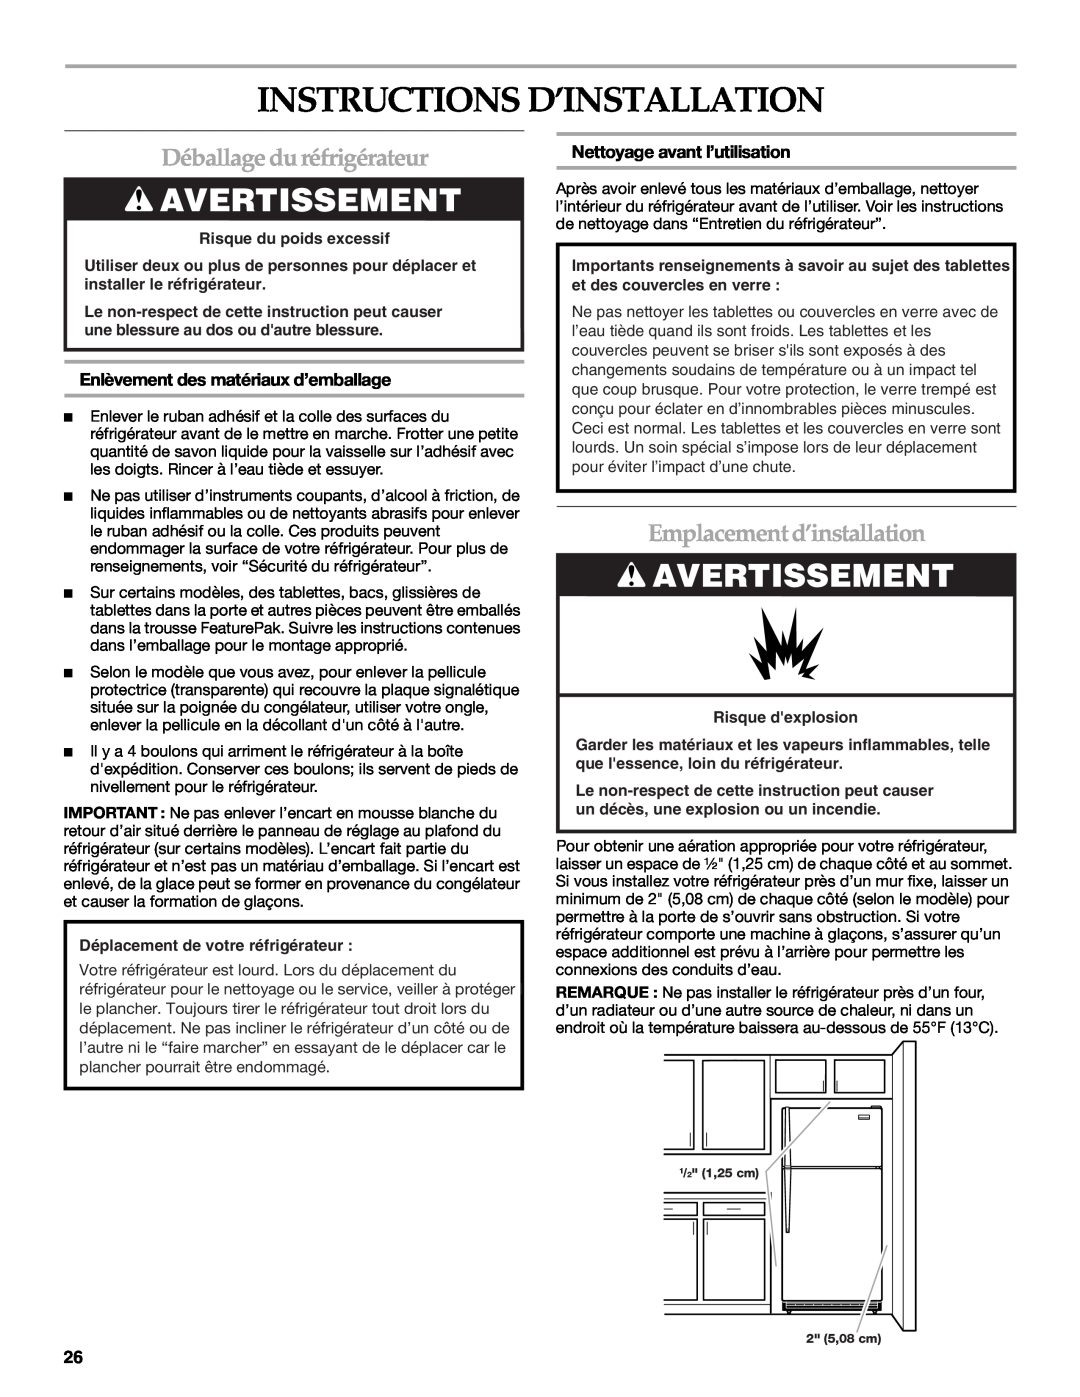 KitchenAid TOP-MOUNT REFRIGERATOR Instructions D’Installation, Déballage du réfrigérateur, Emplacement d’installation 